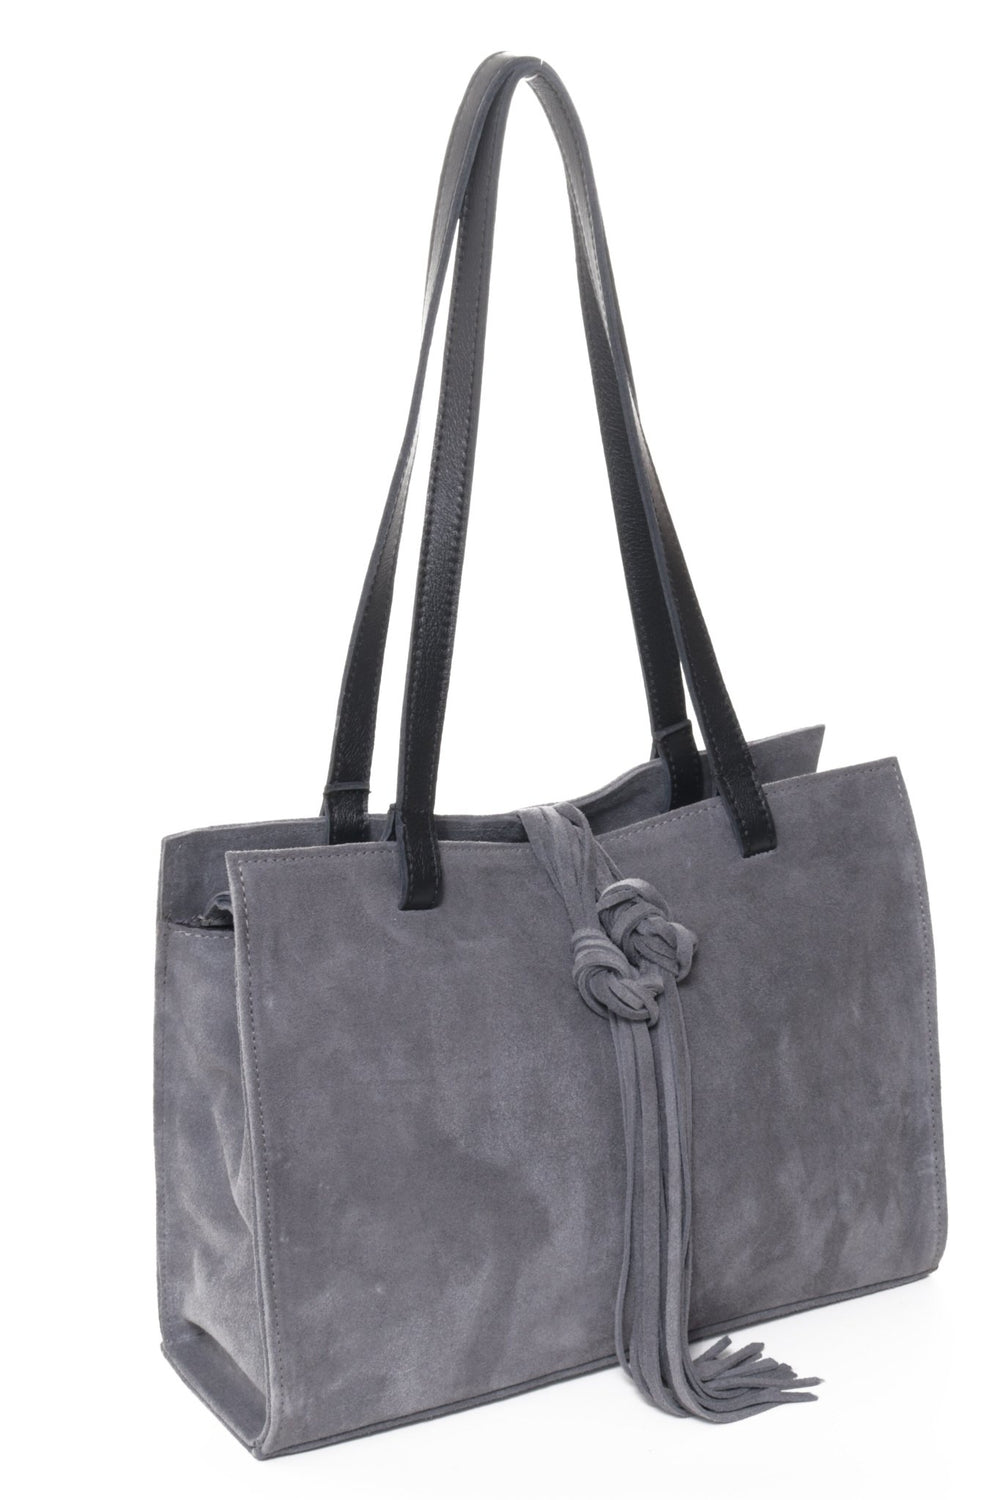 MONTEREY Grey Suede – Carla Mancini Handbags